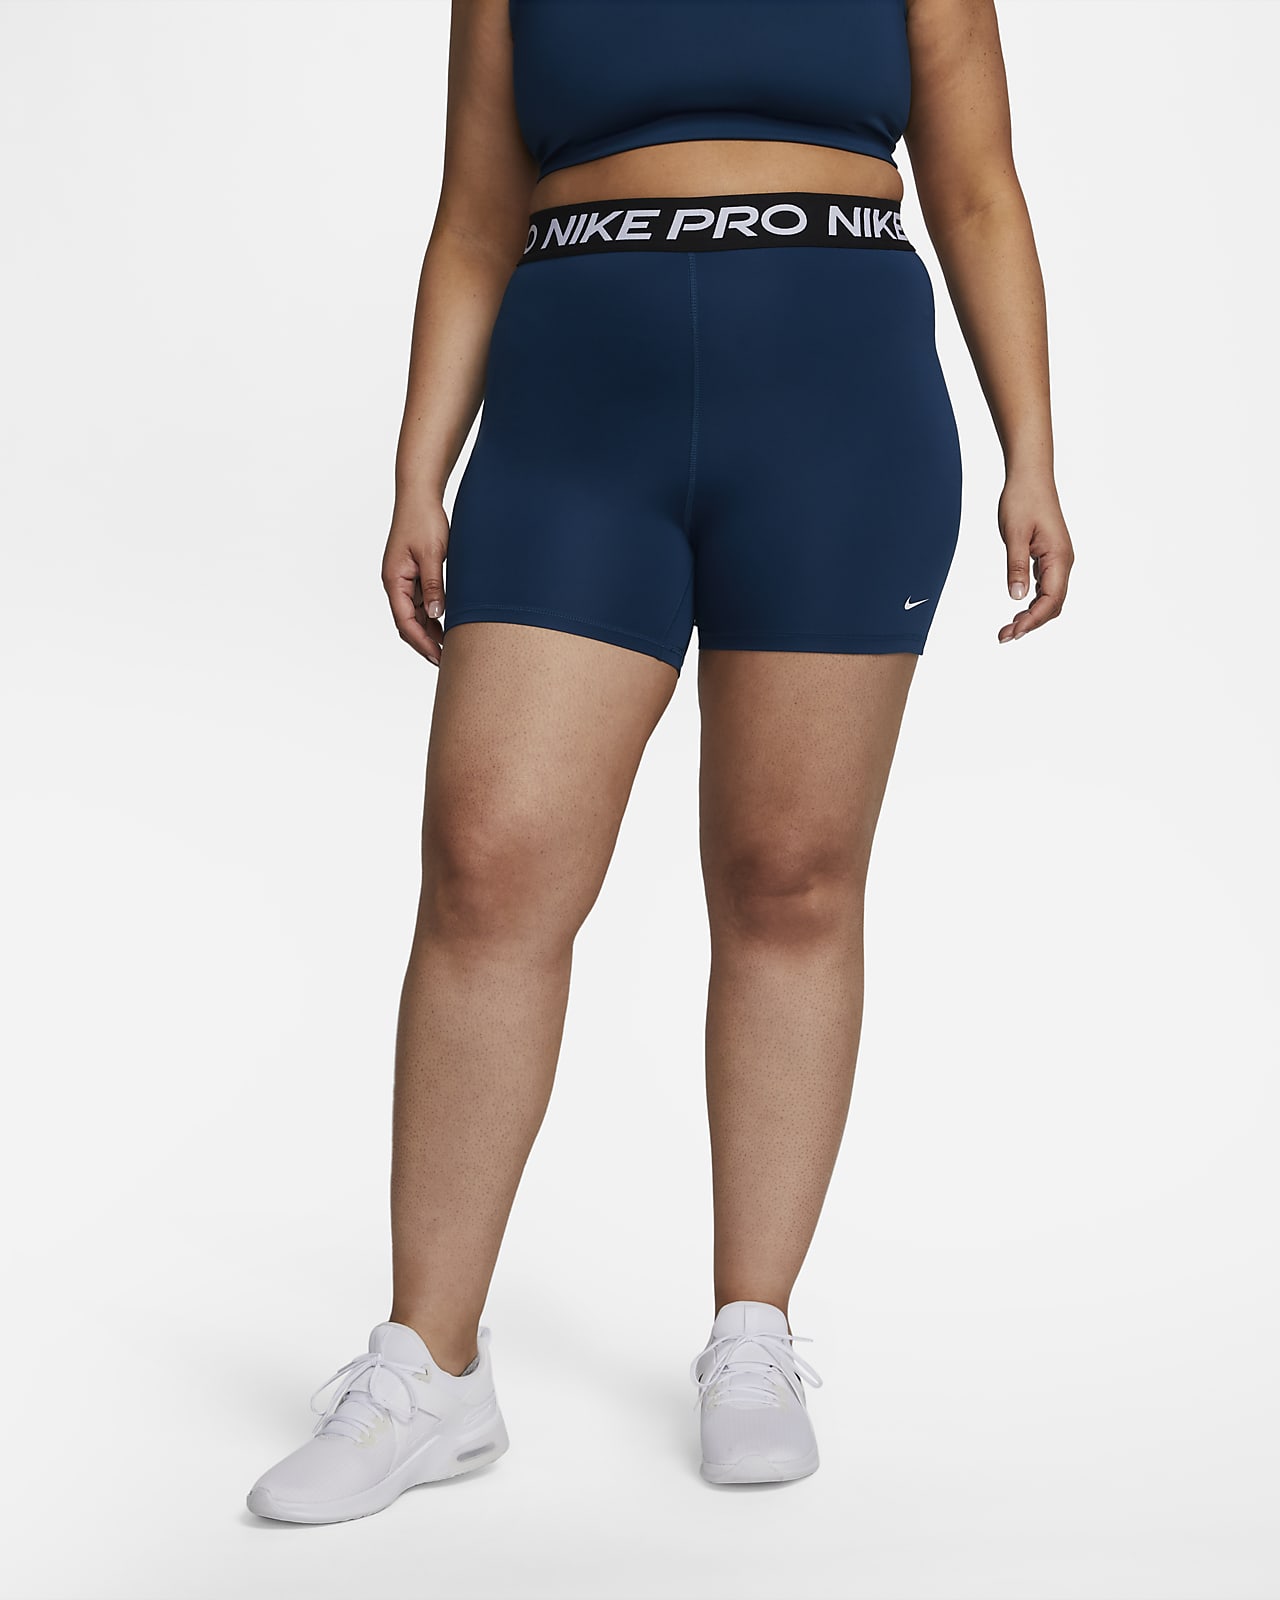 Fugaz Subir Riego Shorts Nike Pro 365 de 13 cm para mujer (talla grande). Nike.com